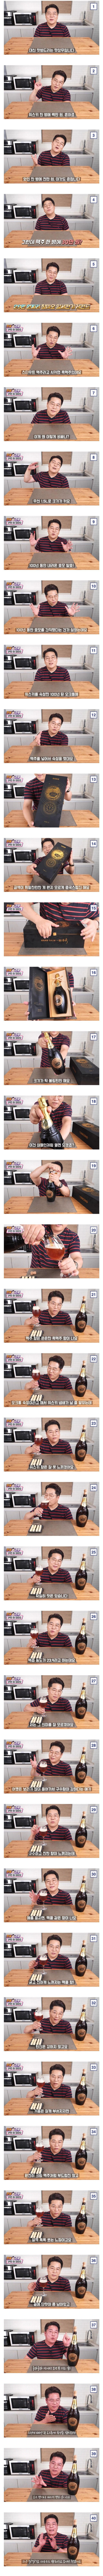 30만 원짜리 맥주 리뷰